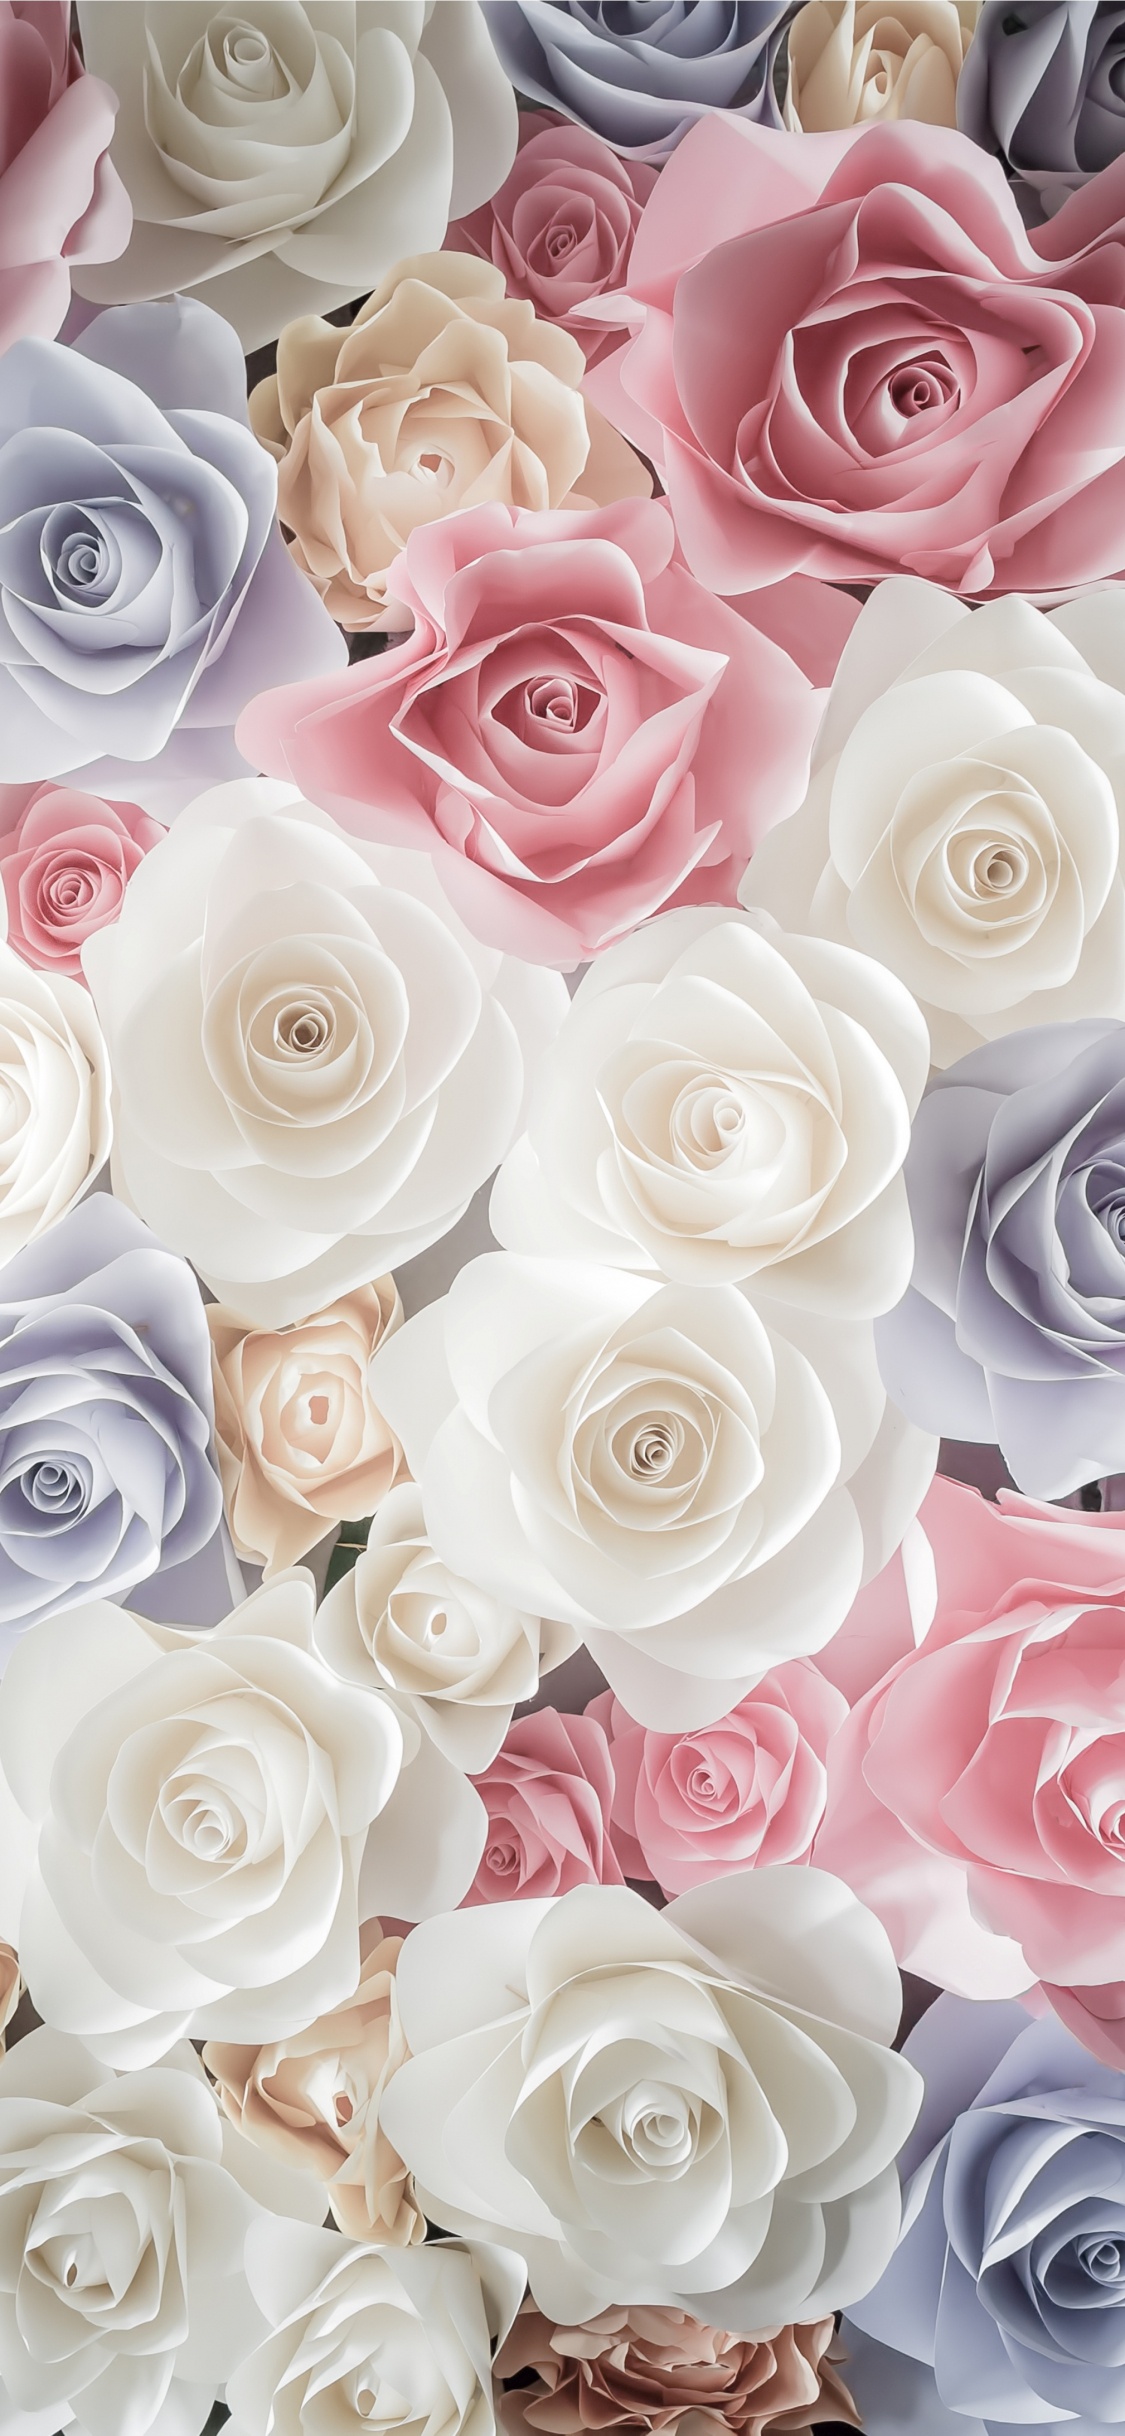 玫瑰花园, 切花, 粉红色, 玫瑰家庭, 花卉设计 壁纸 1125x2436 允许